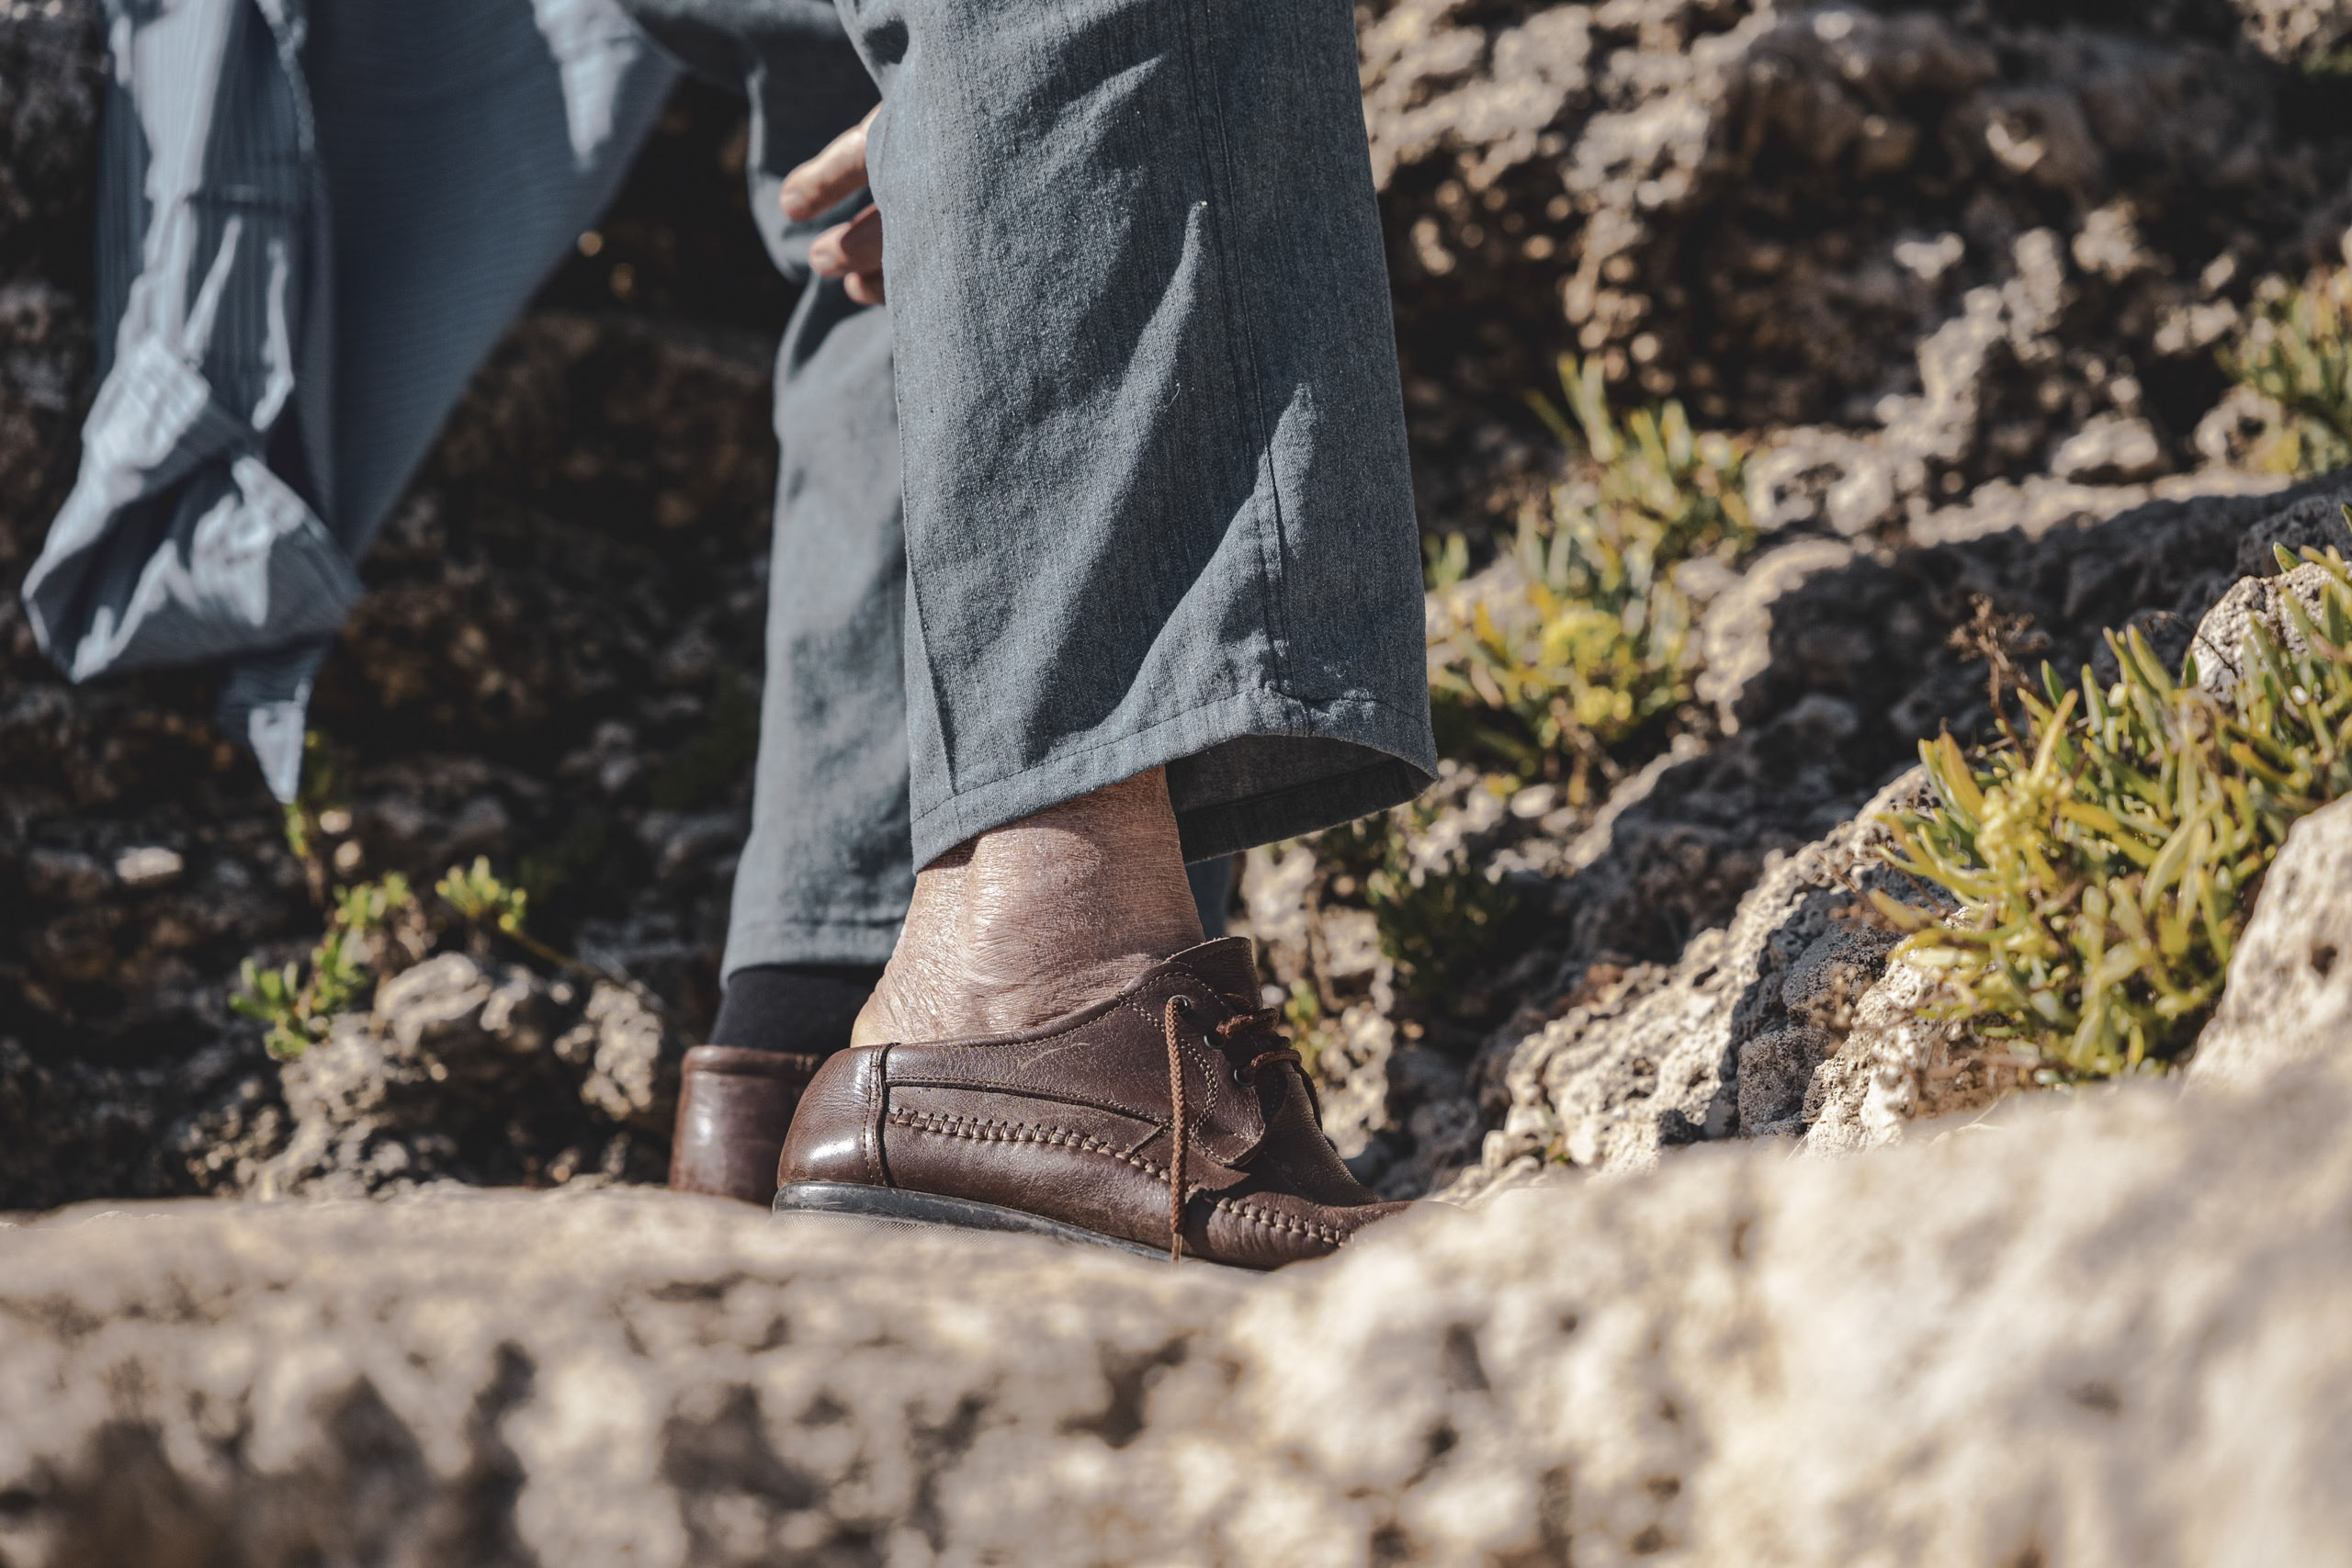 Nahaufnahme der Unterschenkel und Füße einer Person. Sie trägt braune Stiefel und Jeans und steht in felsigem Gelände mit grünen Pflanzen. © Fotografie Tomas Rodriguez